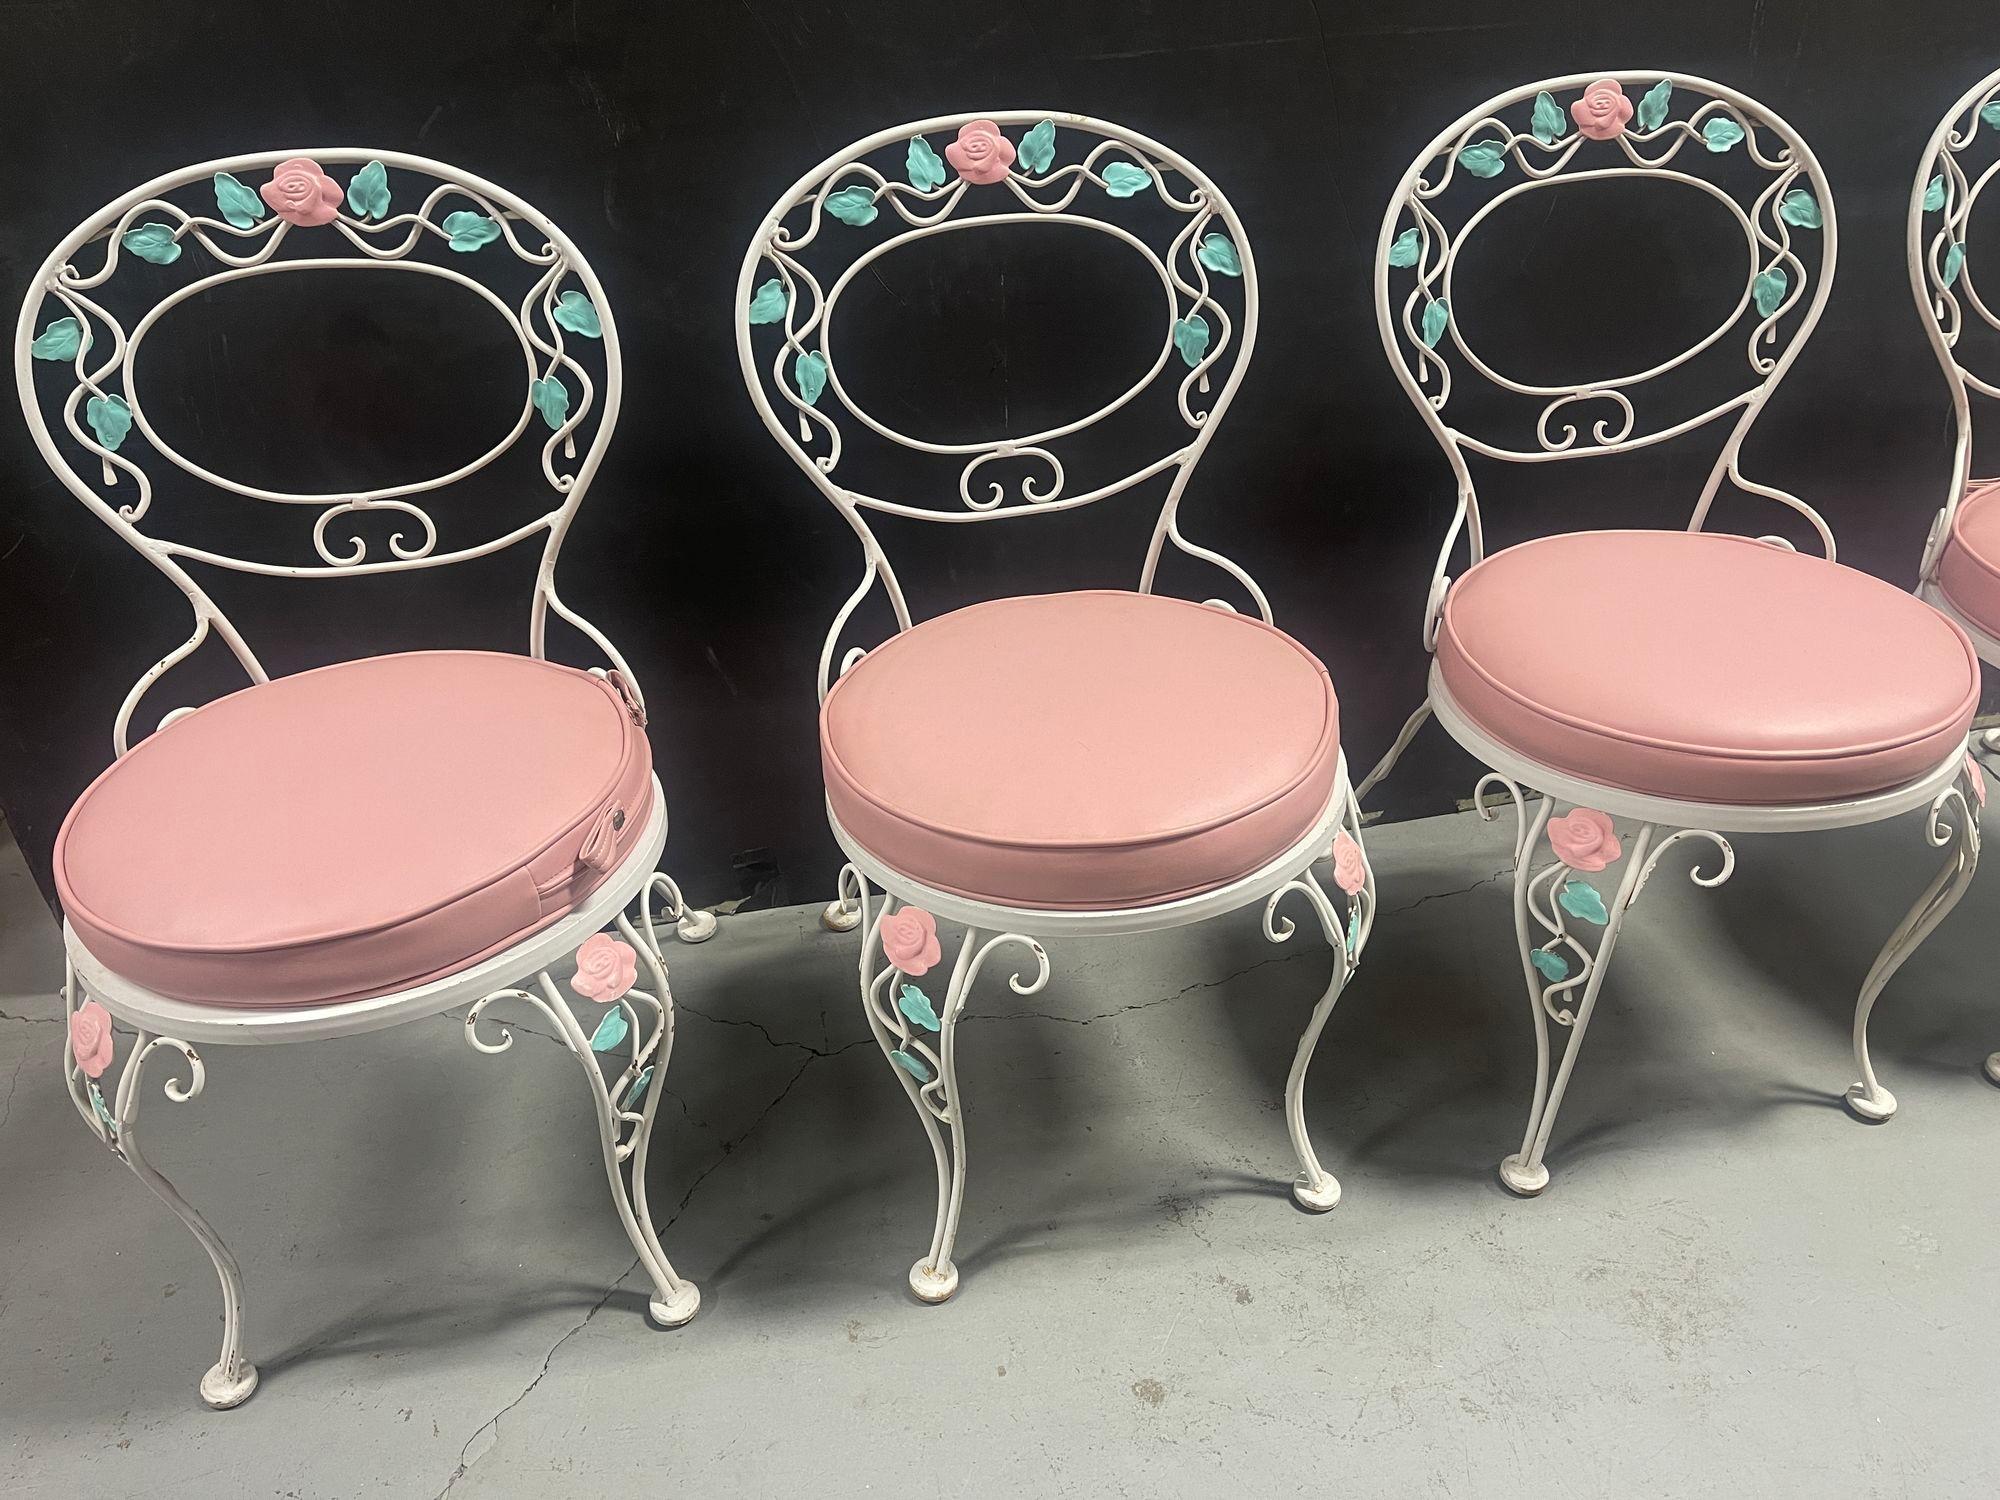 Das Pink Rose White Iron Garden Table and Chairs Set verkörpert Eleganz und Charme und ist eine malerische Ergänzung für jeden Außenbereich. Das Set ist aus robustem, weißem Eisen gefertigt und weist aufwändig gestaltete Rosenmotive auf, die Tisch